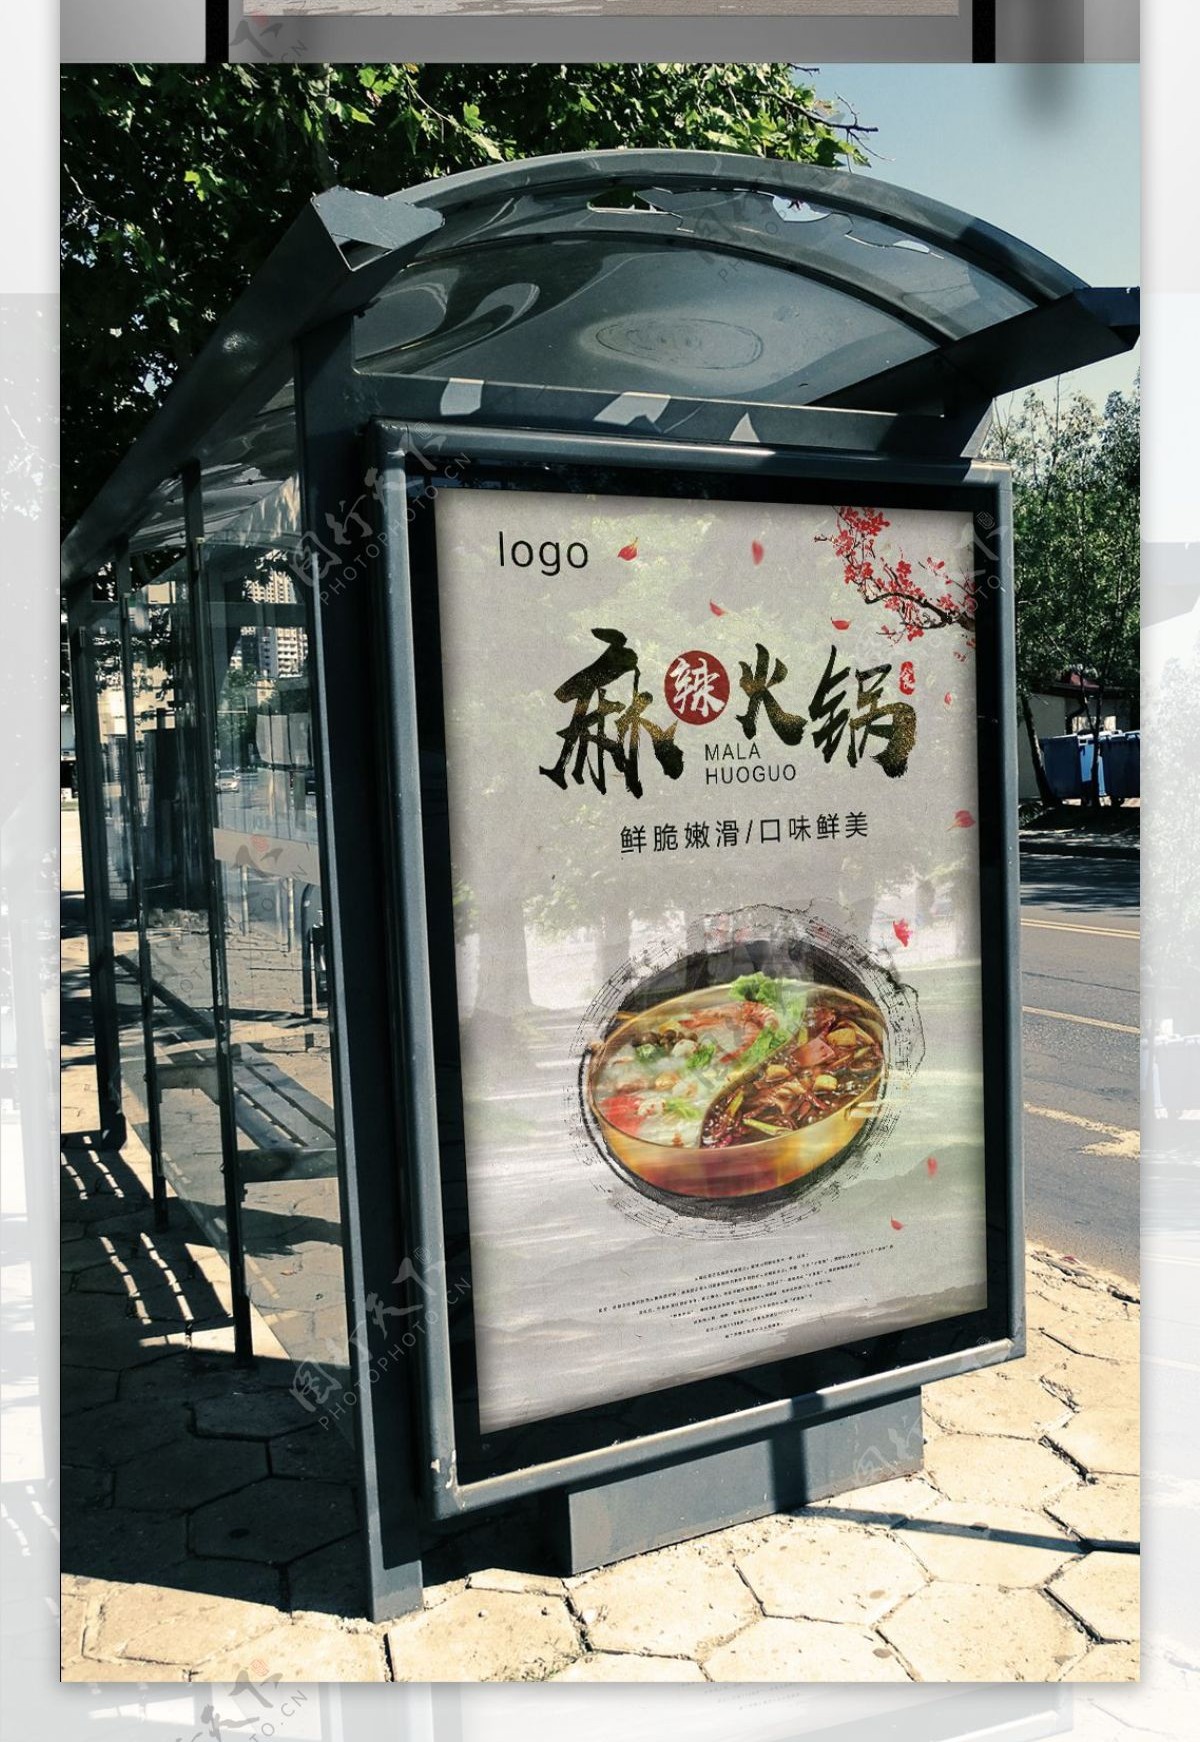 火锅美食文化海报设计